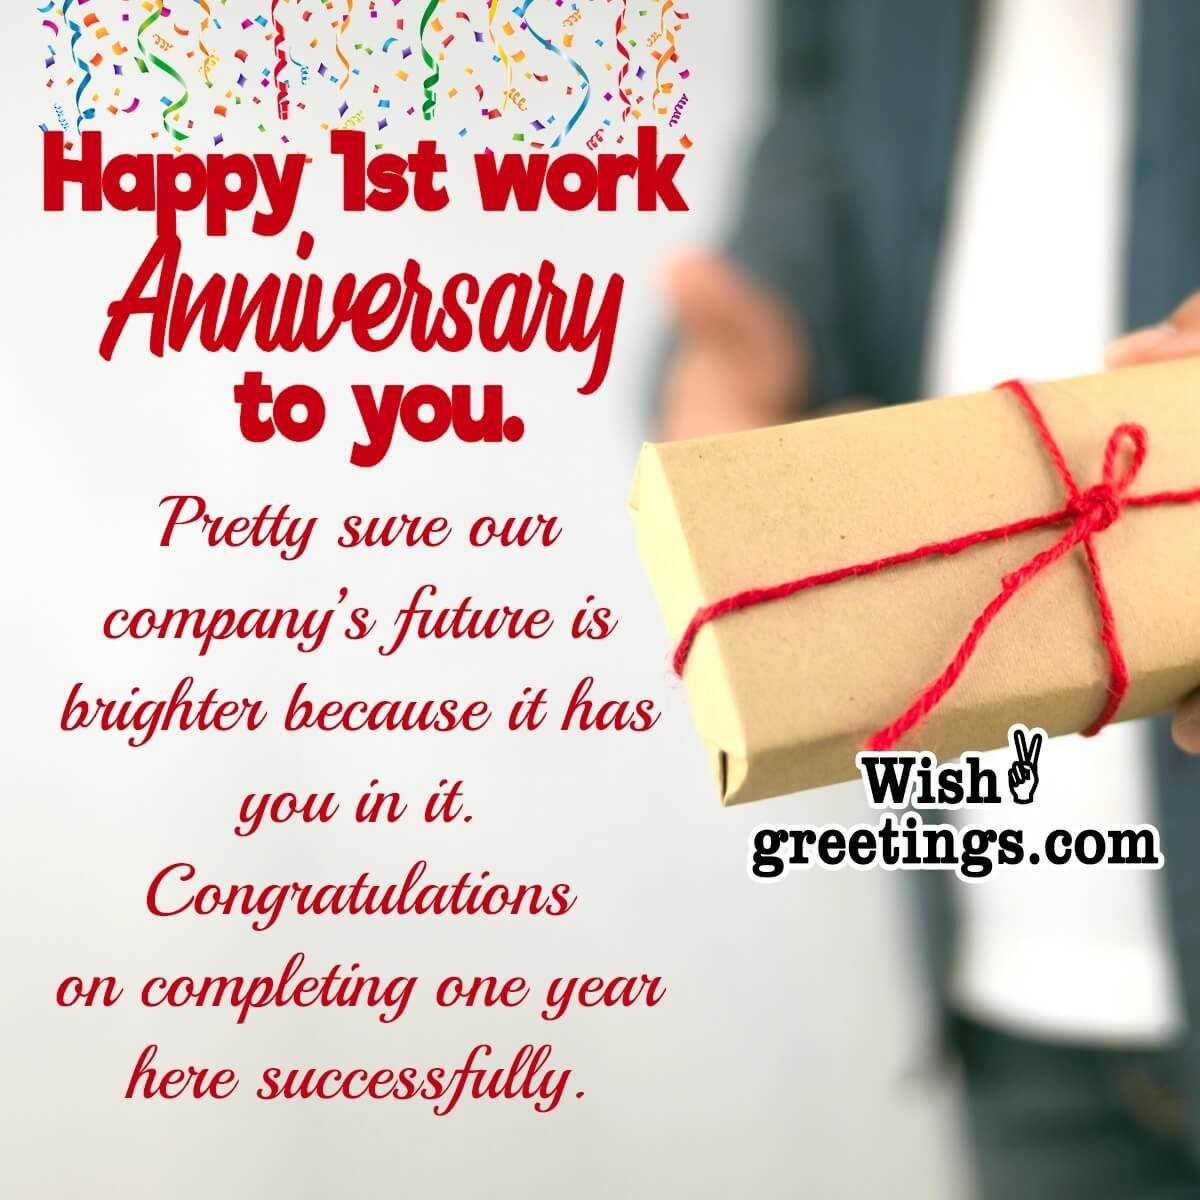 1st Work Anniversary Wishes - Wish Greetings